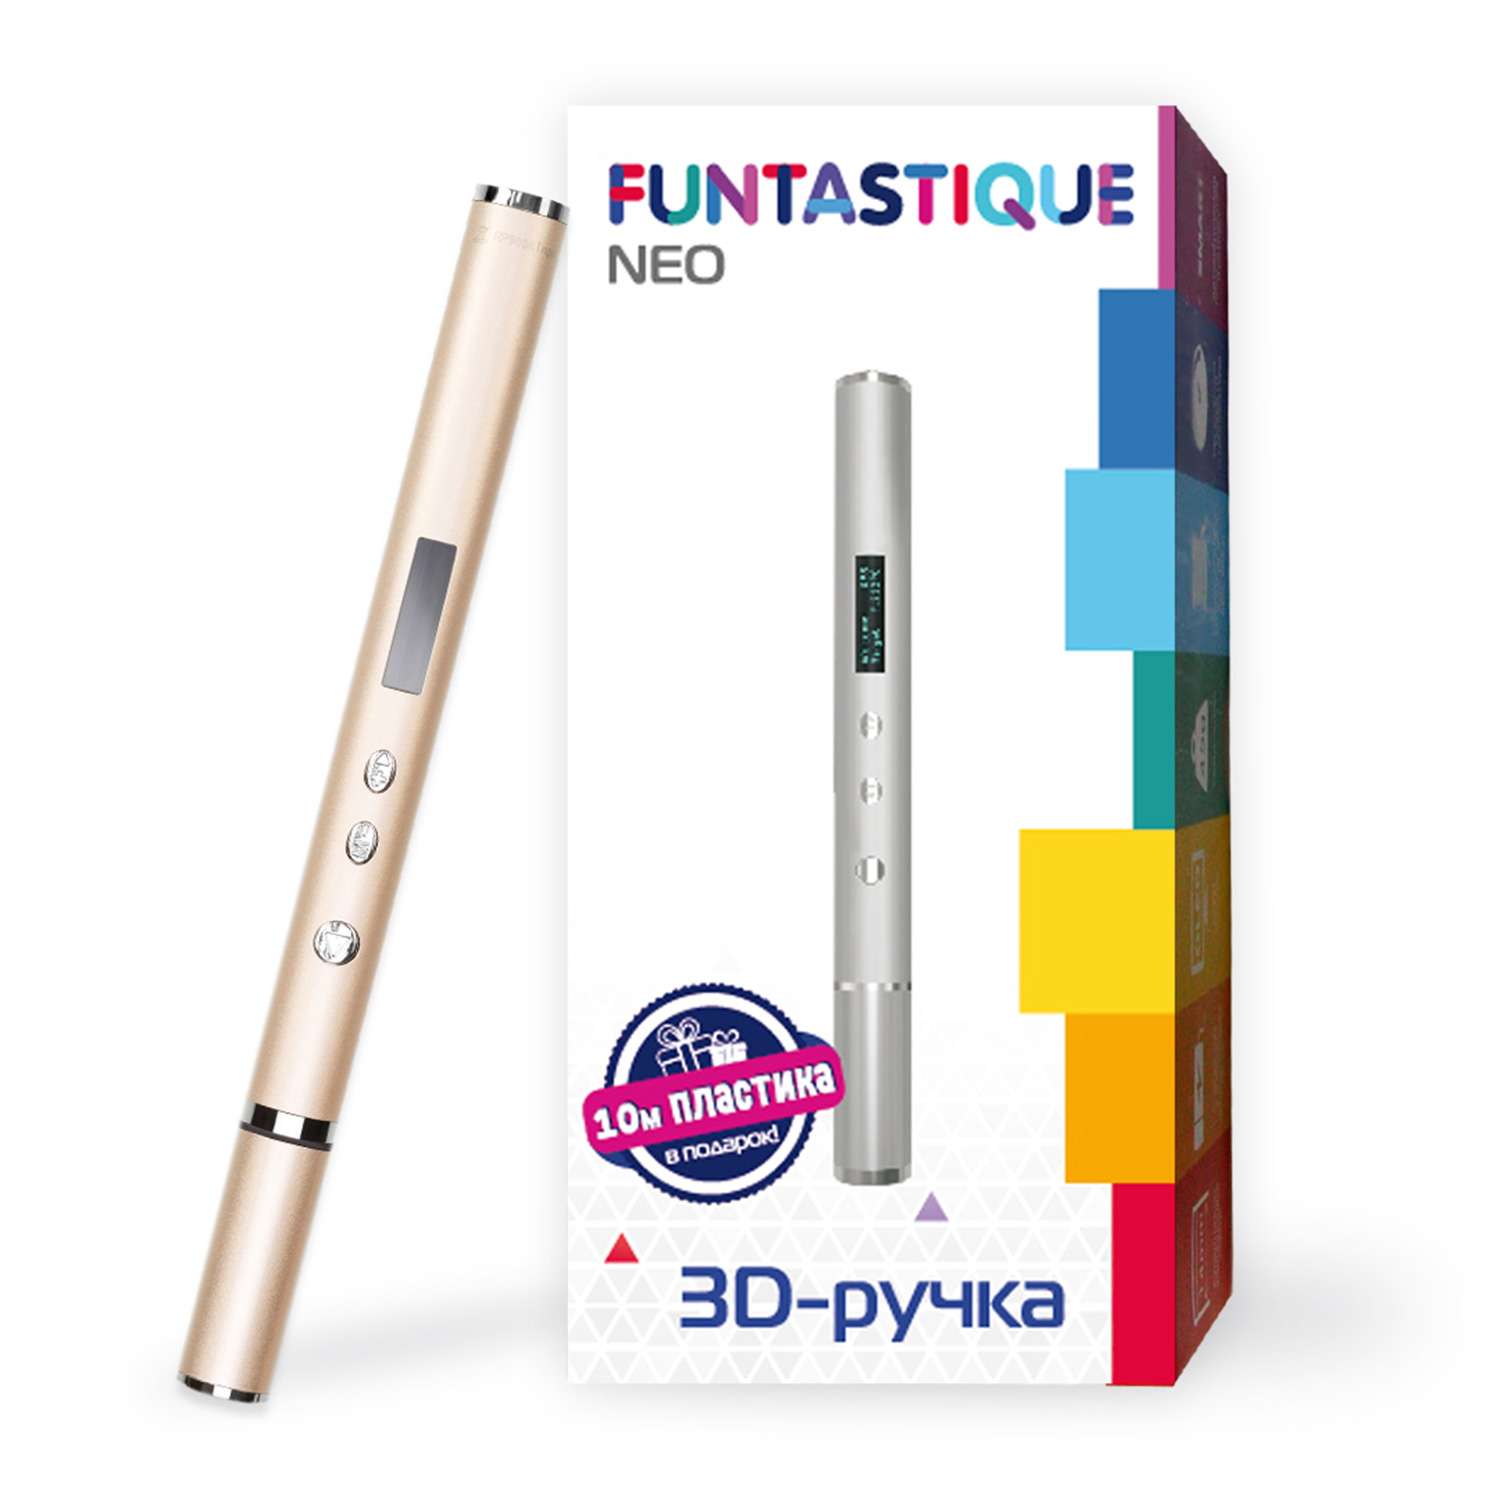 3D-ручка FUNTASTIQUE Neo золотисто-розовая - фото 2